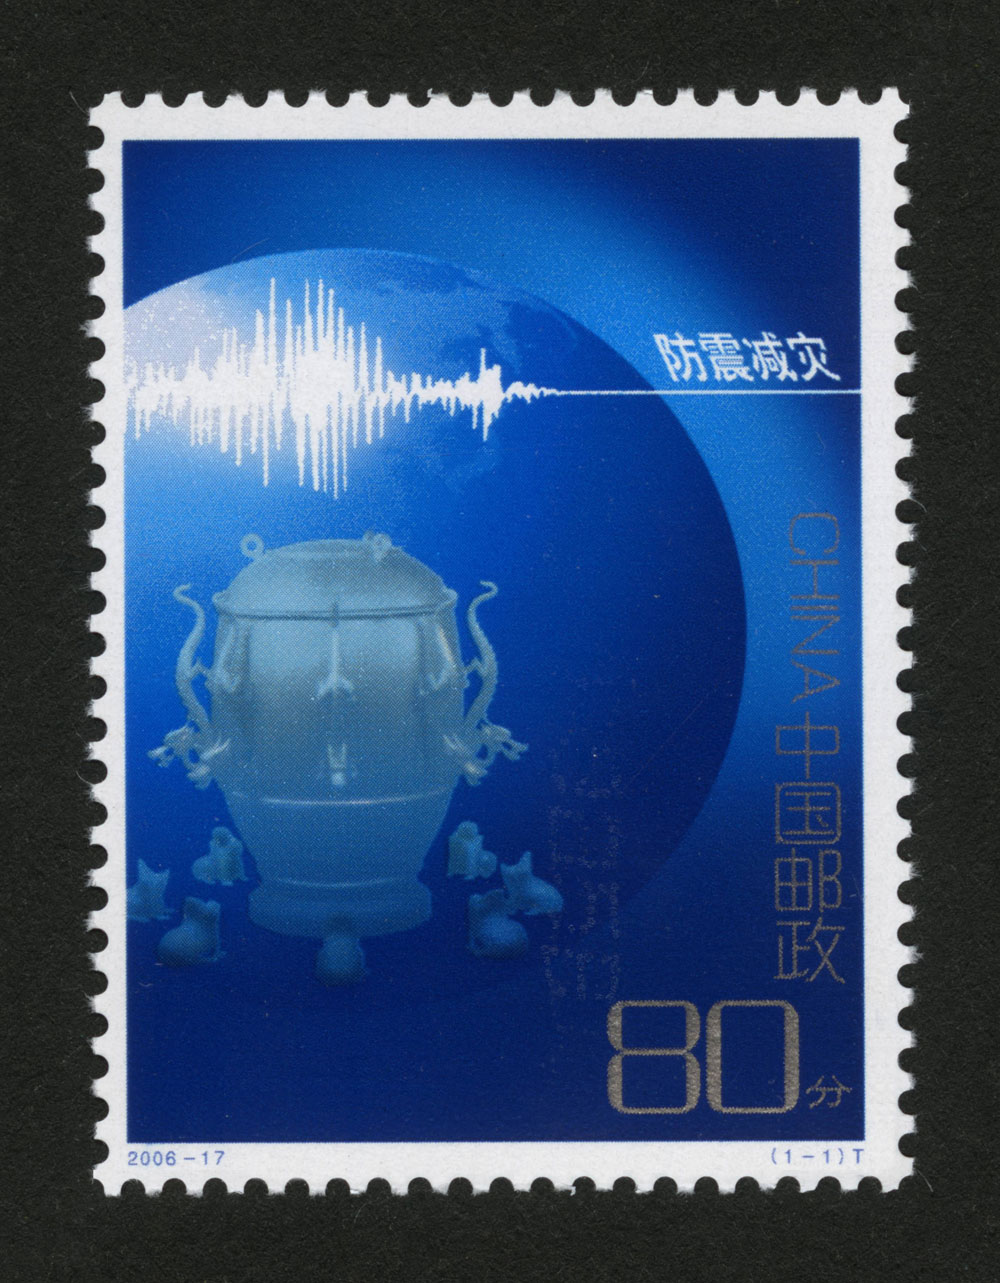 2006年-17T 防震减灾邮票